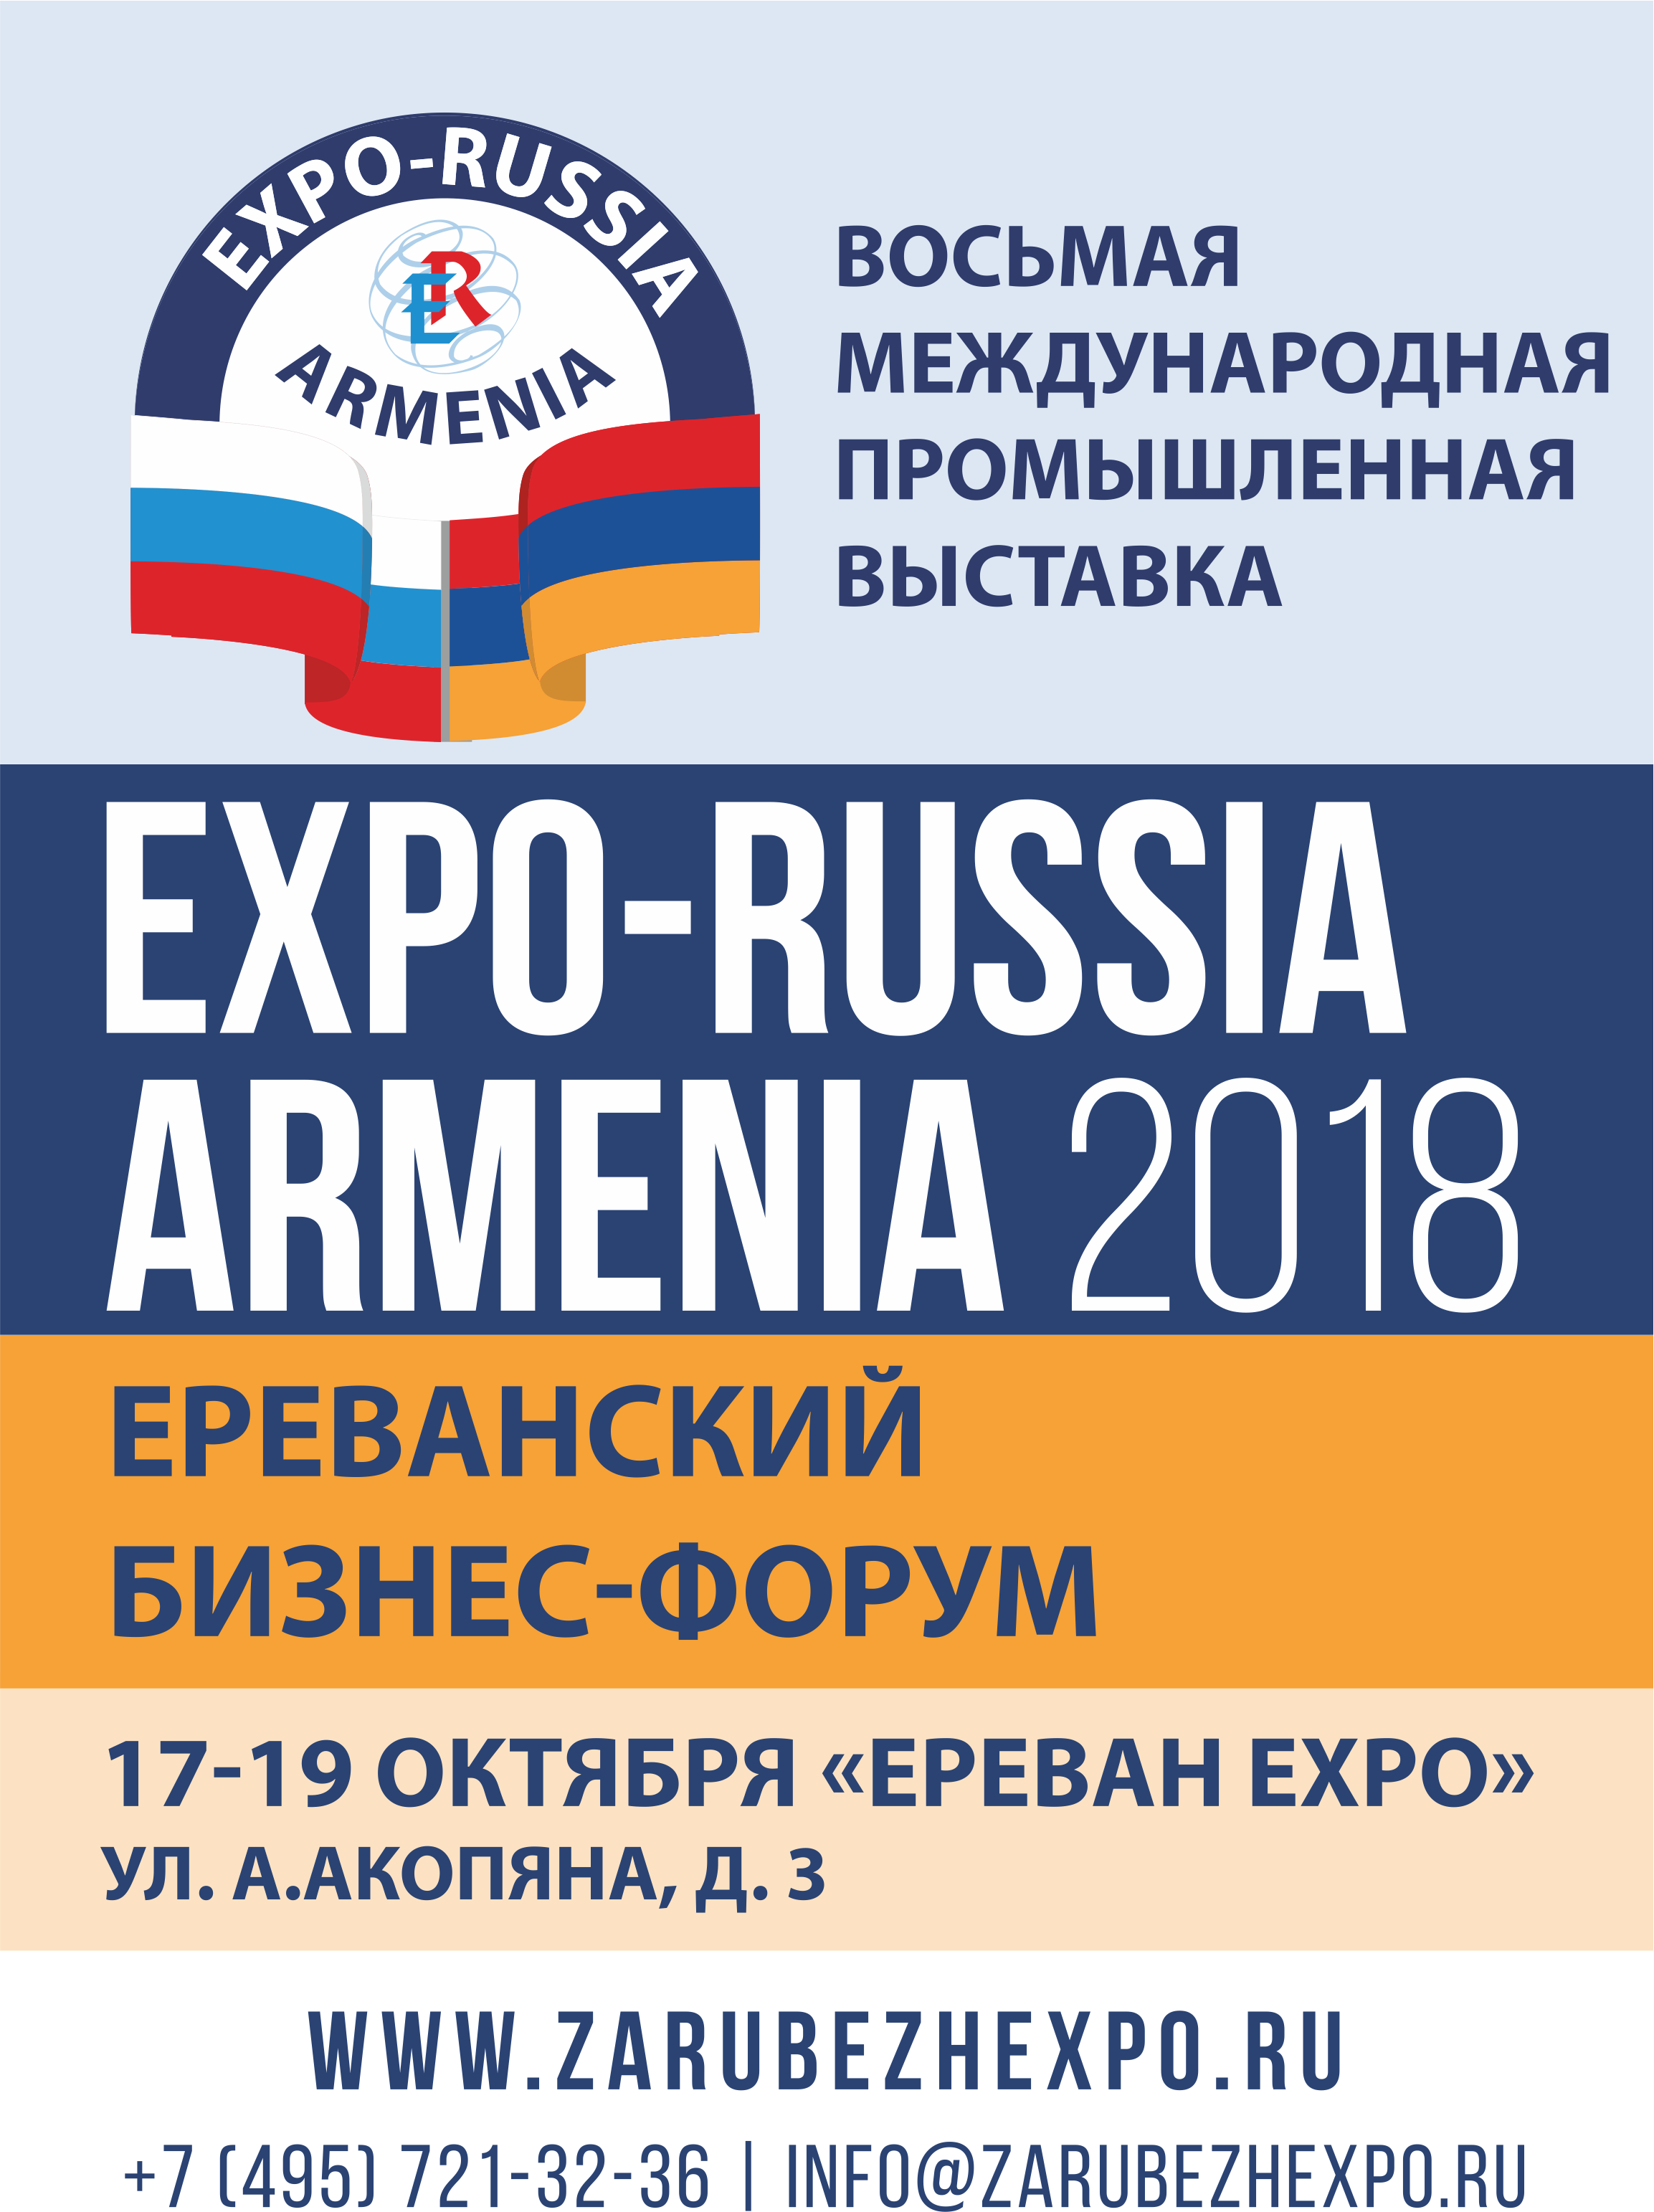 8-    «Expo-Russia Armenia»  8-  -  17 - 19  2018 